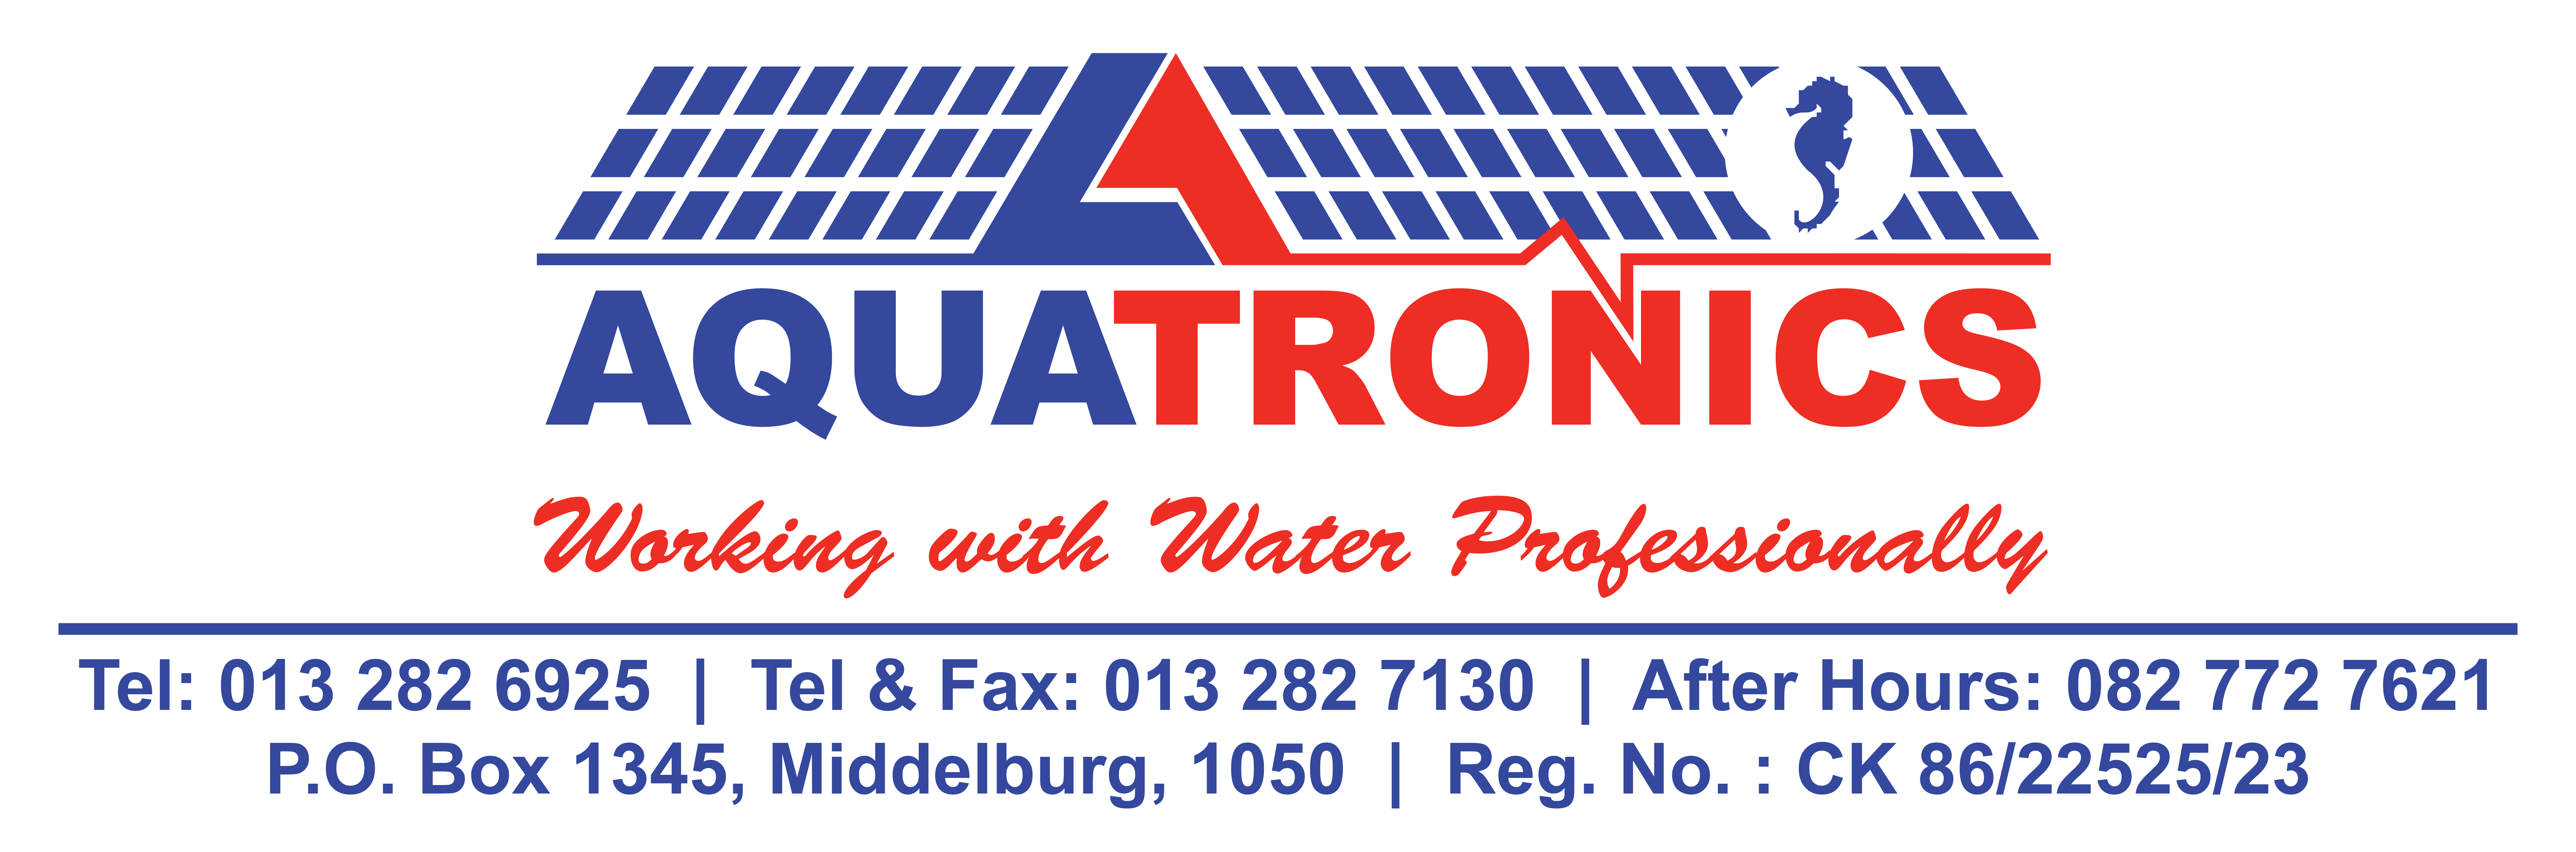 Aquatronics logo